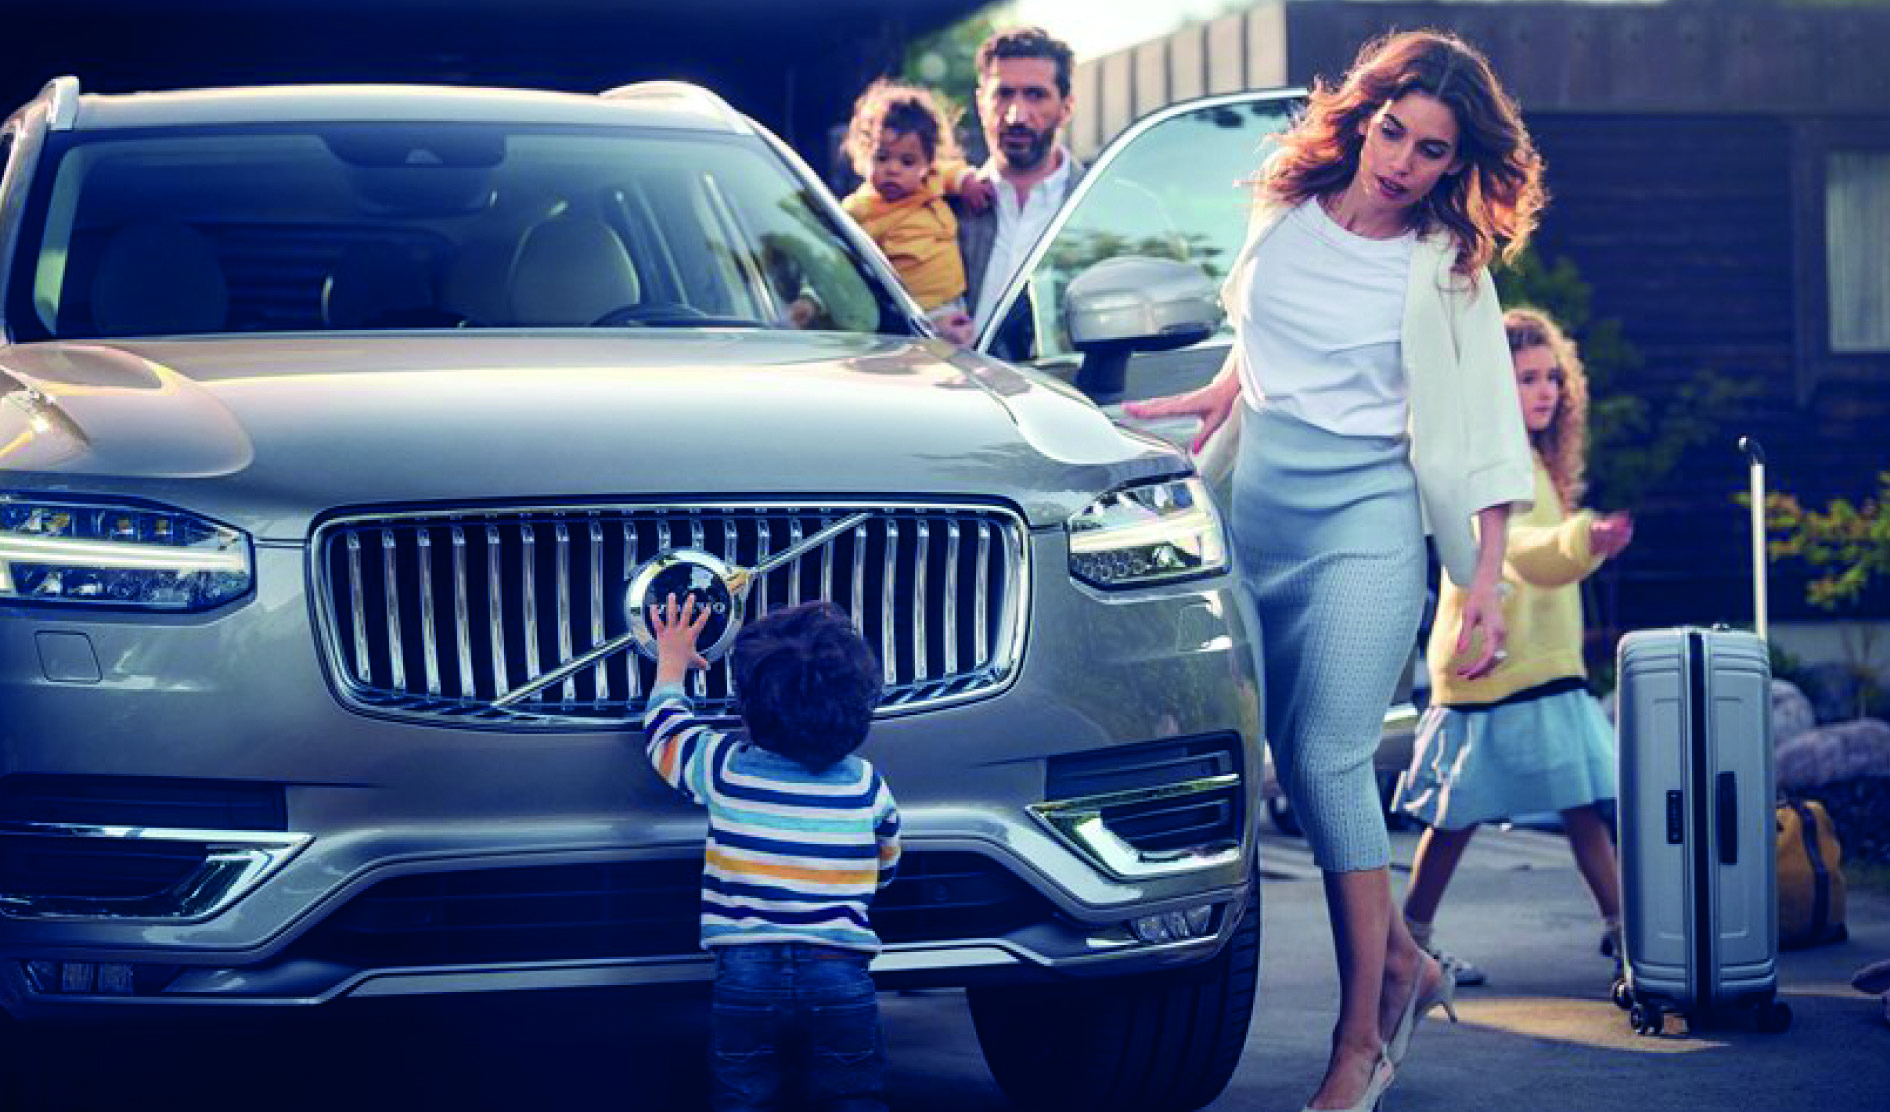 Al dar los primeros pasos para formar una familia o con la llegada de un nuevo miembro a la familia, elegir el vehículo adecuado es fundamental.